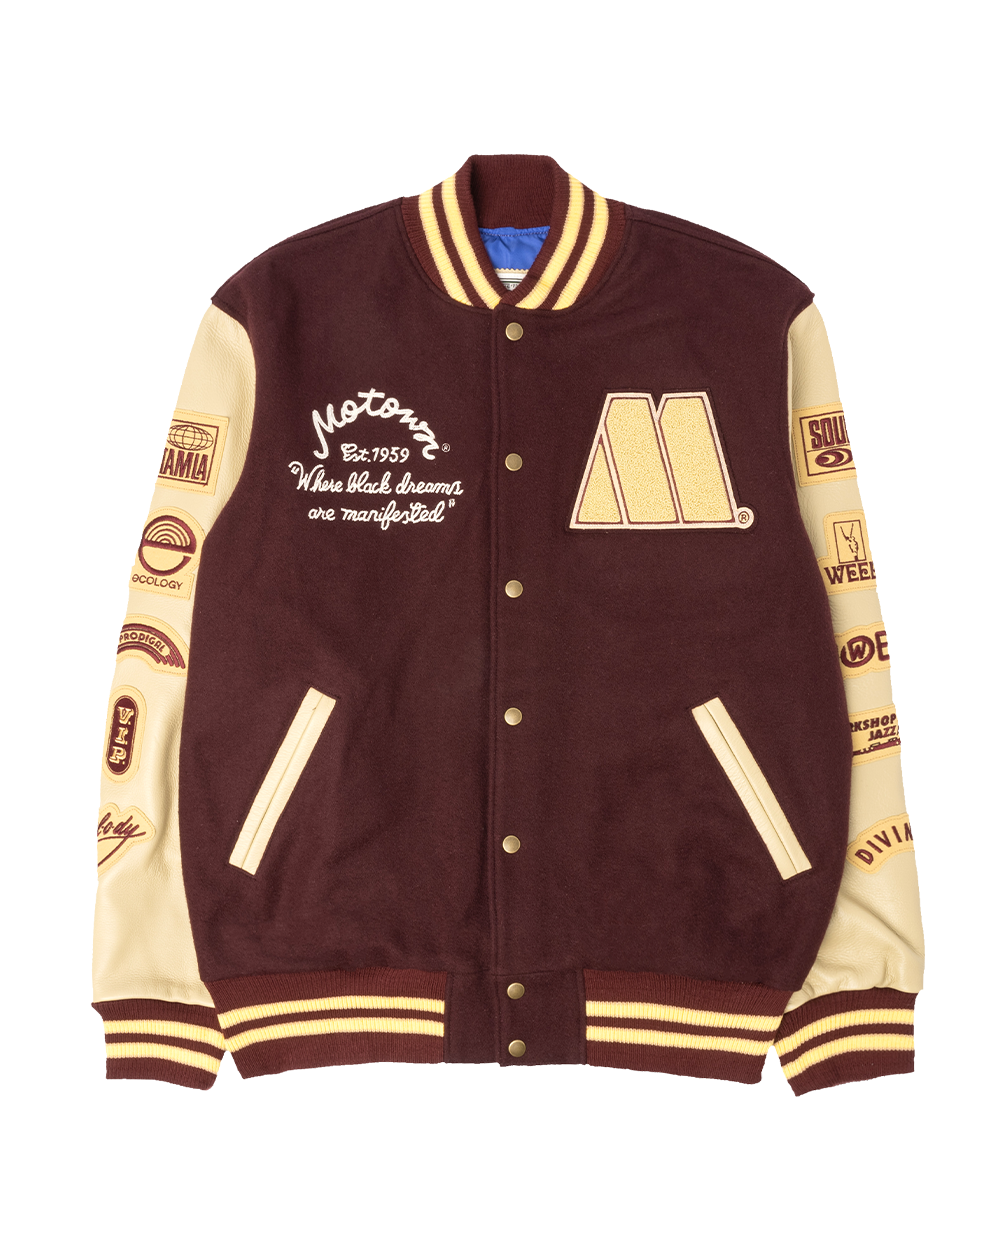 Motown Varsity Jacket – Motown Records